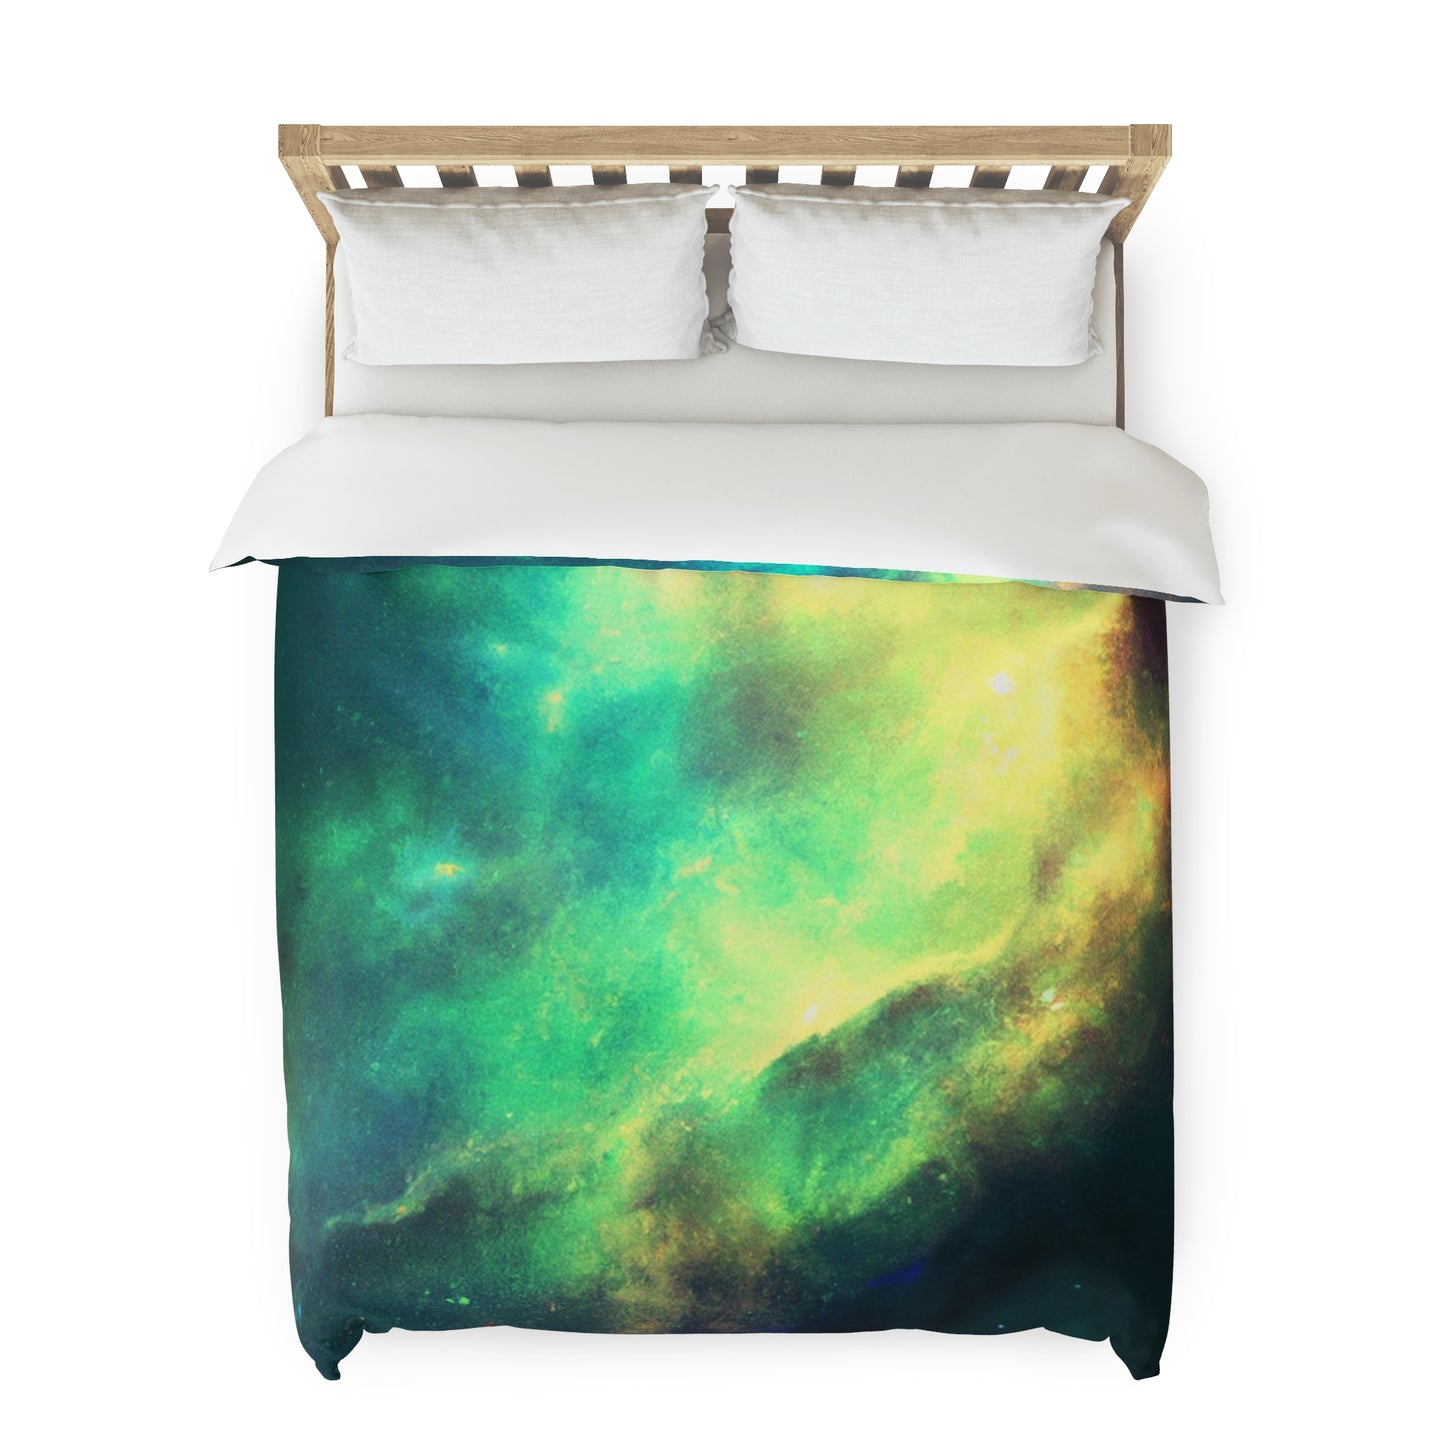 name

Rosette Dreaming - Astronomy Duvet Bed Cover